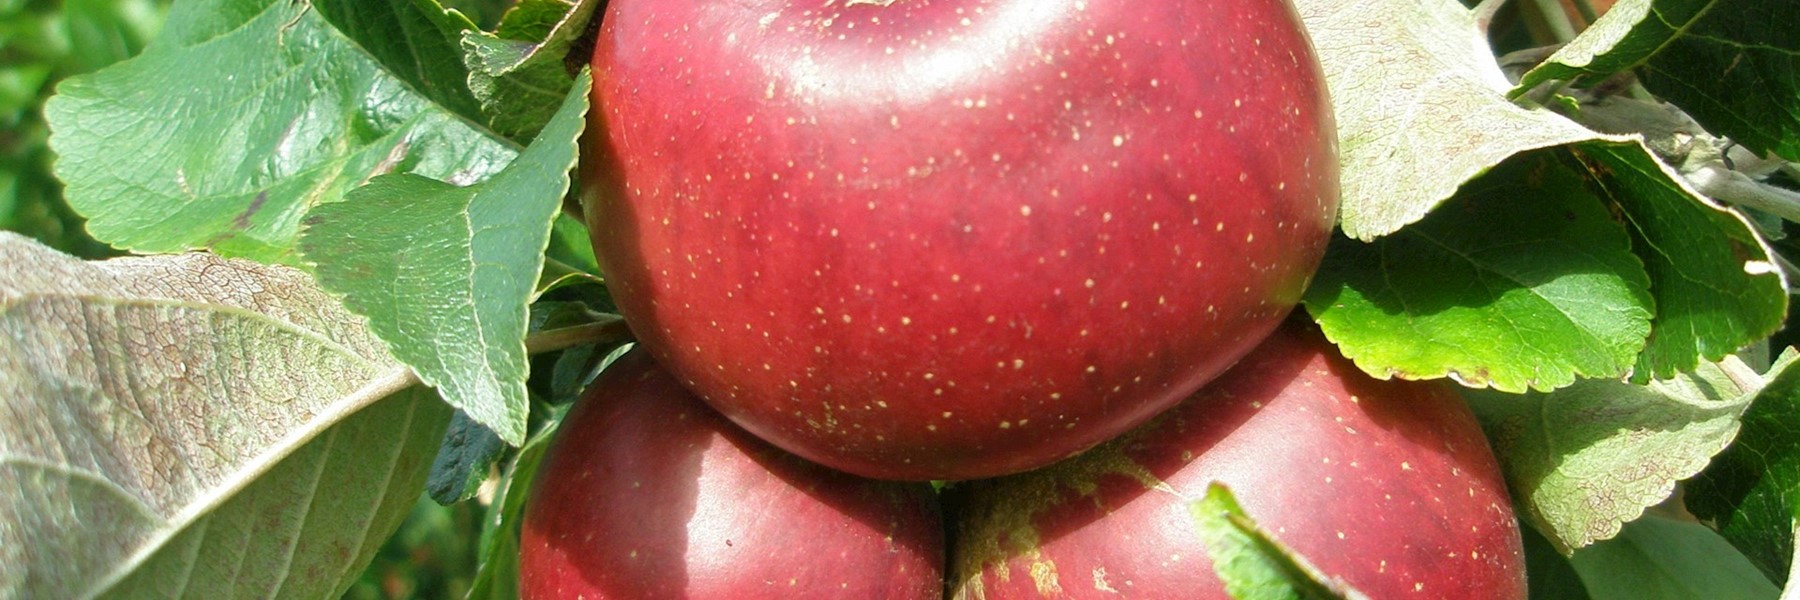 apples-kingston-black